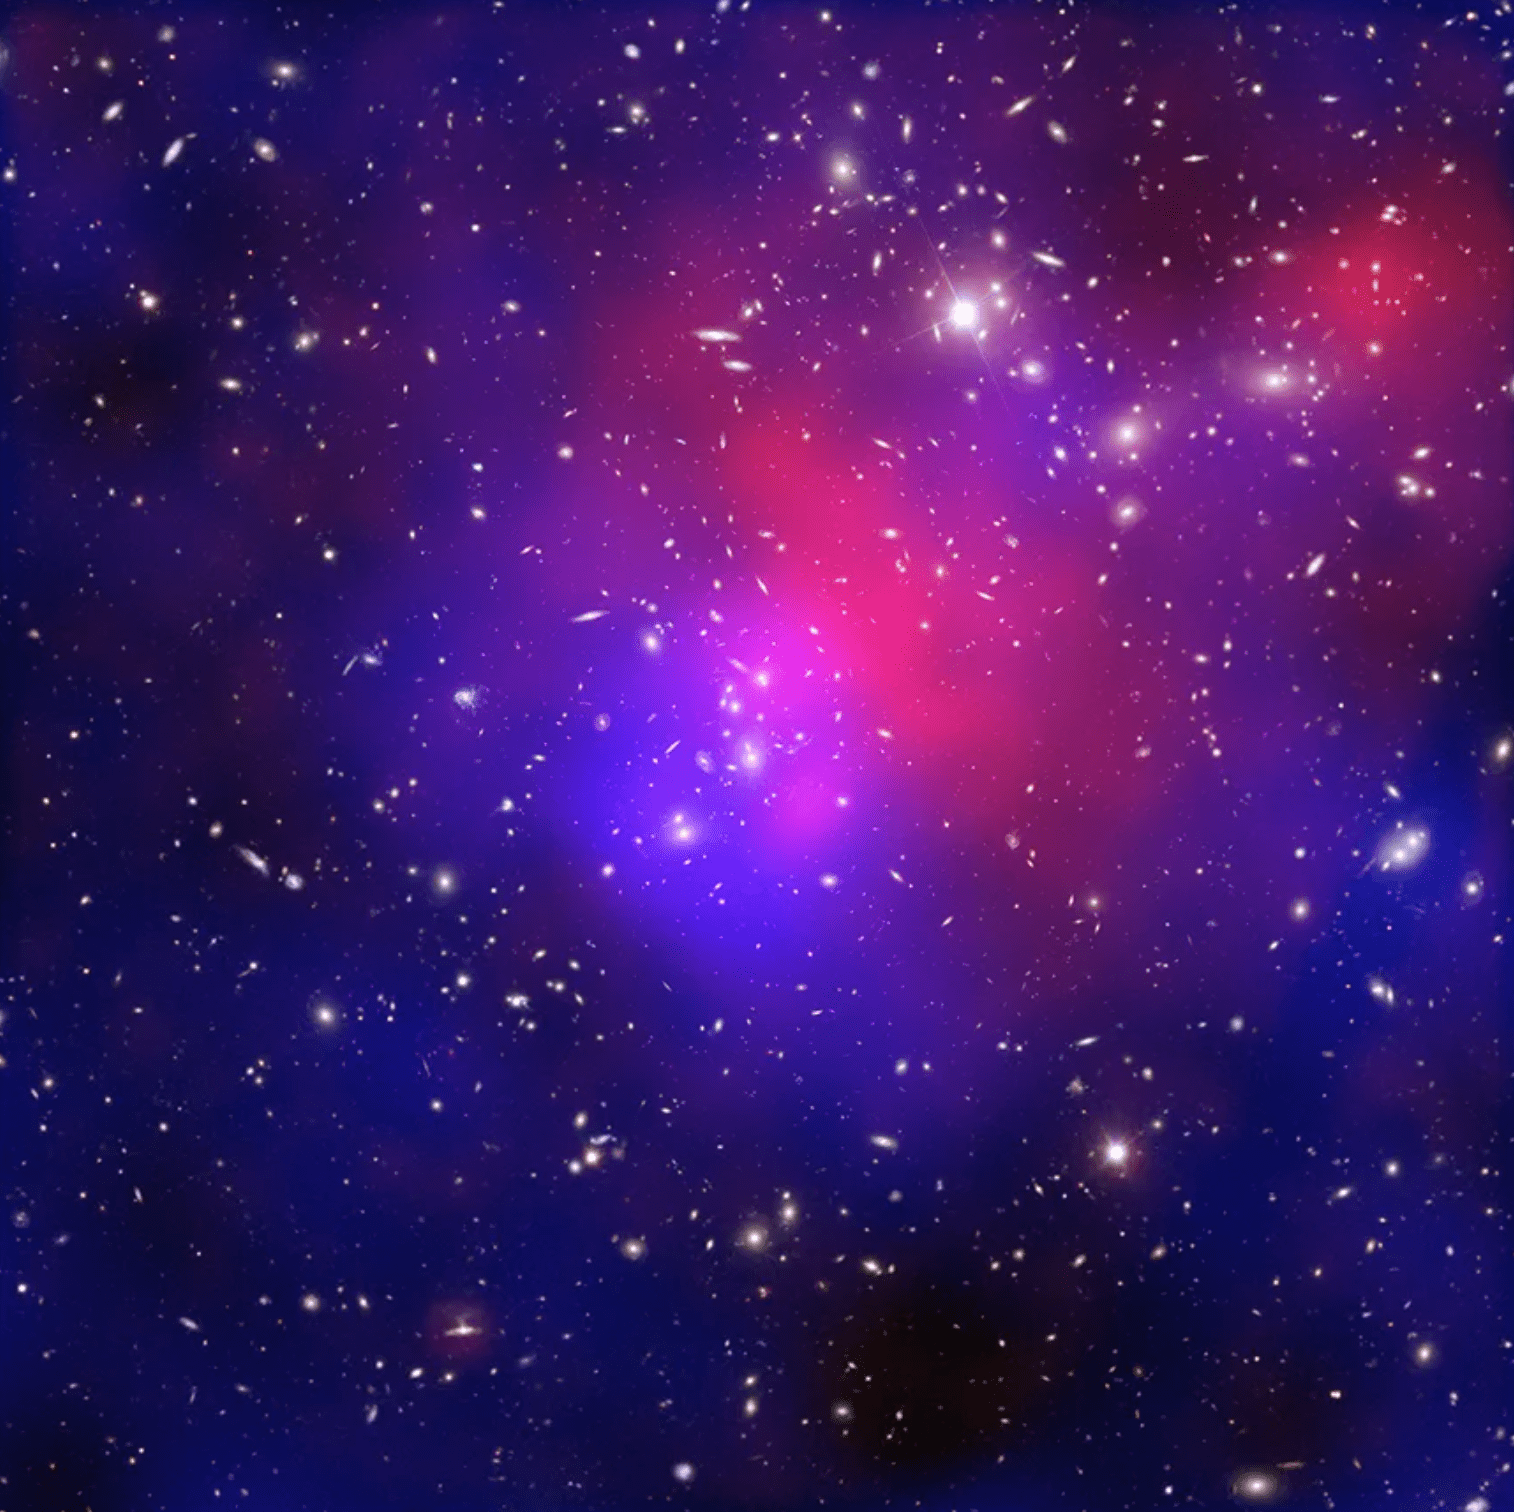 Esta imagen compuesta muestra una de las colisiones entre cúmulos de galaxias más complicadas y dramáticas jamás vistas. Conocido oficialmente como Abell 2744, este sistema ha sido denominado el cúmulo de Pandora debido a la gran variedad de estructuras diferentes que se encuentran en él. Los datos del telescopio Chandra (en rojo) muestran gas con temperaturas de millones de grados. En azul, hay un mapa que muestra la concentración total de masa (principalmente materia oscura), según datos del telescopio espacial Hubble, el Telescopio Muy Grande (VLT, por sus siglas en inglés) y el telescopio Subaru. Los datos ópticos del Hubble y el VLT también muestran las galaxias constituyentes de los cúmulos. Los astrónomos creen que al menos cuatro cúmulos de galaxias procedentes de diversas direcciones están involucrados en esta colisión.